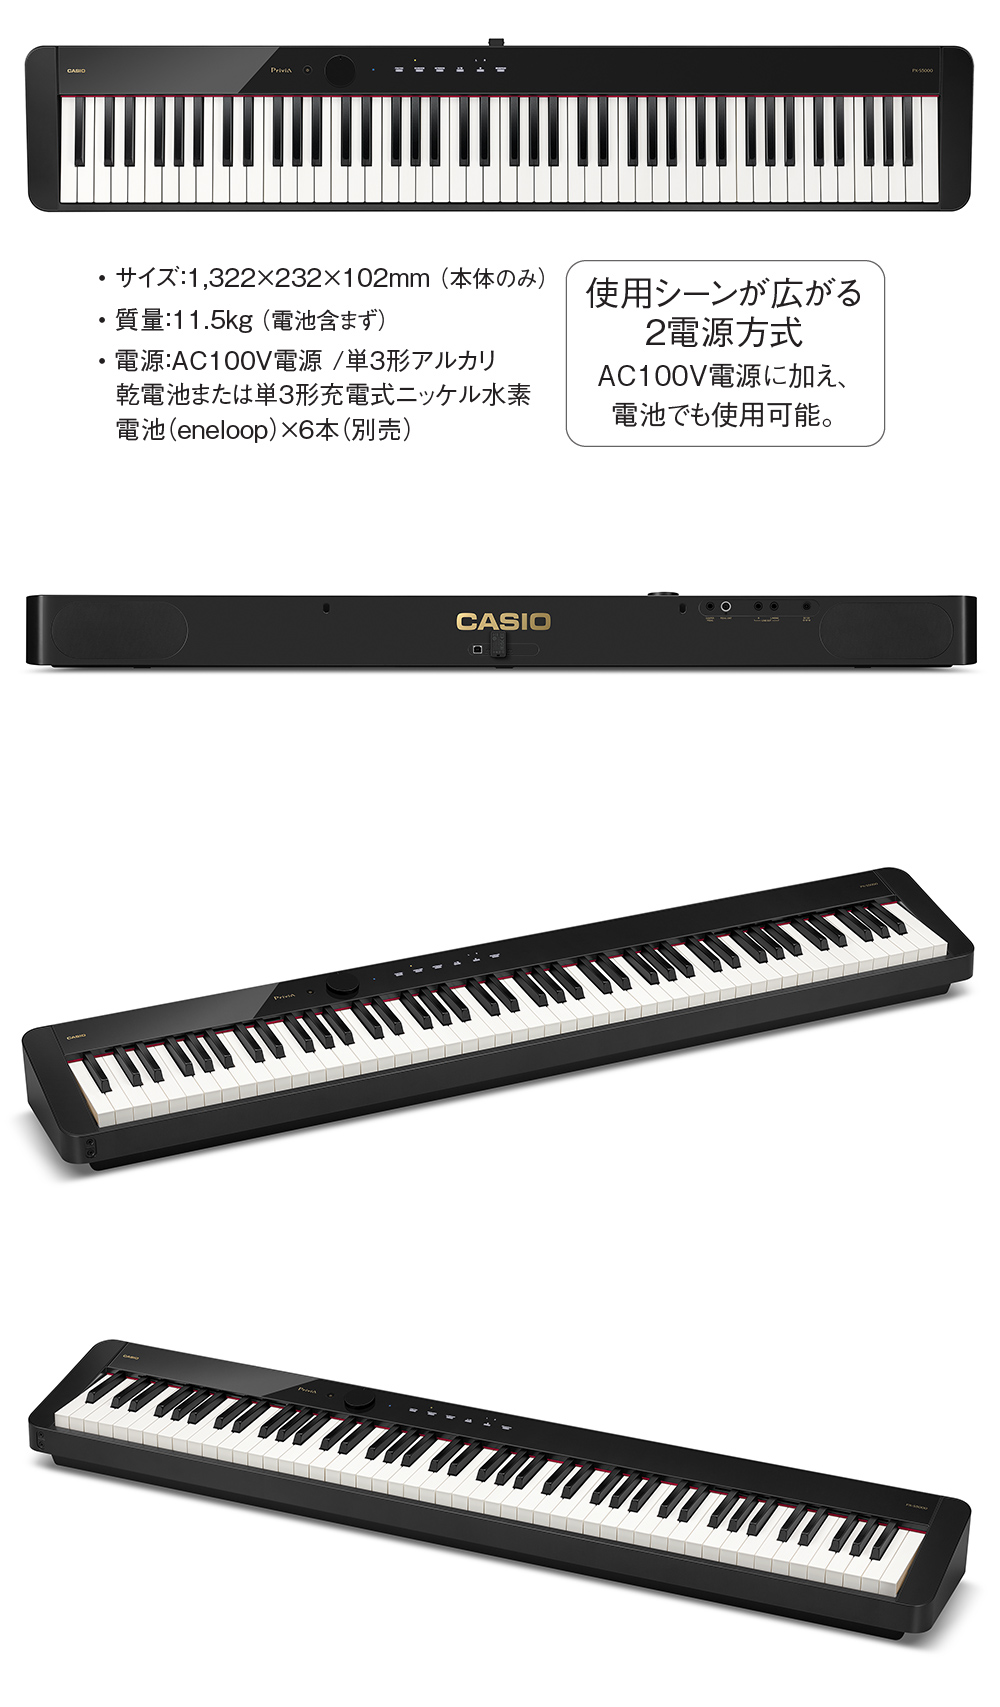 1/8迄 4000円相当ヘッドホンプレゼント！】 CASIO PX-S5000 電子ピアノ